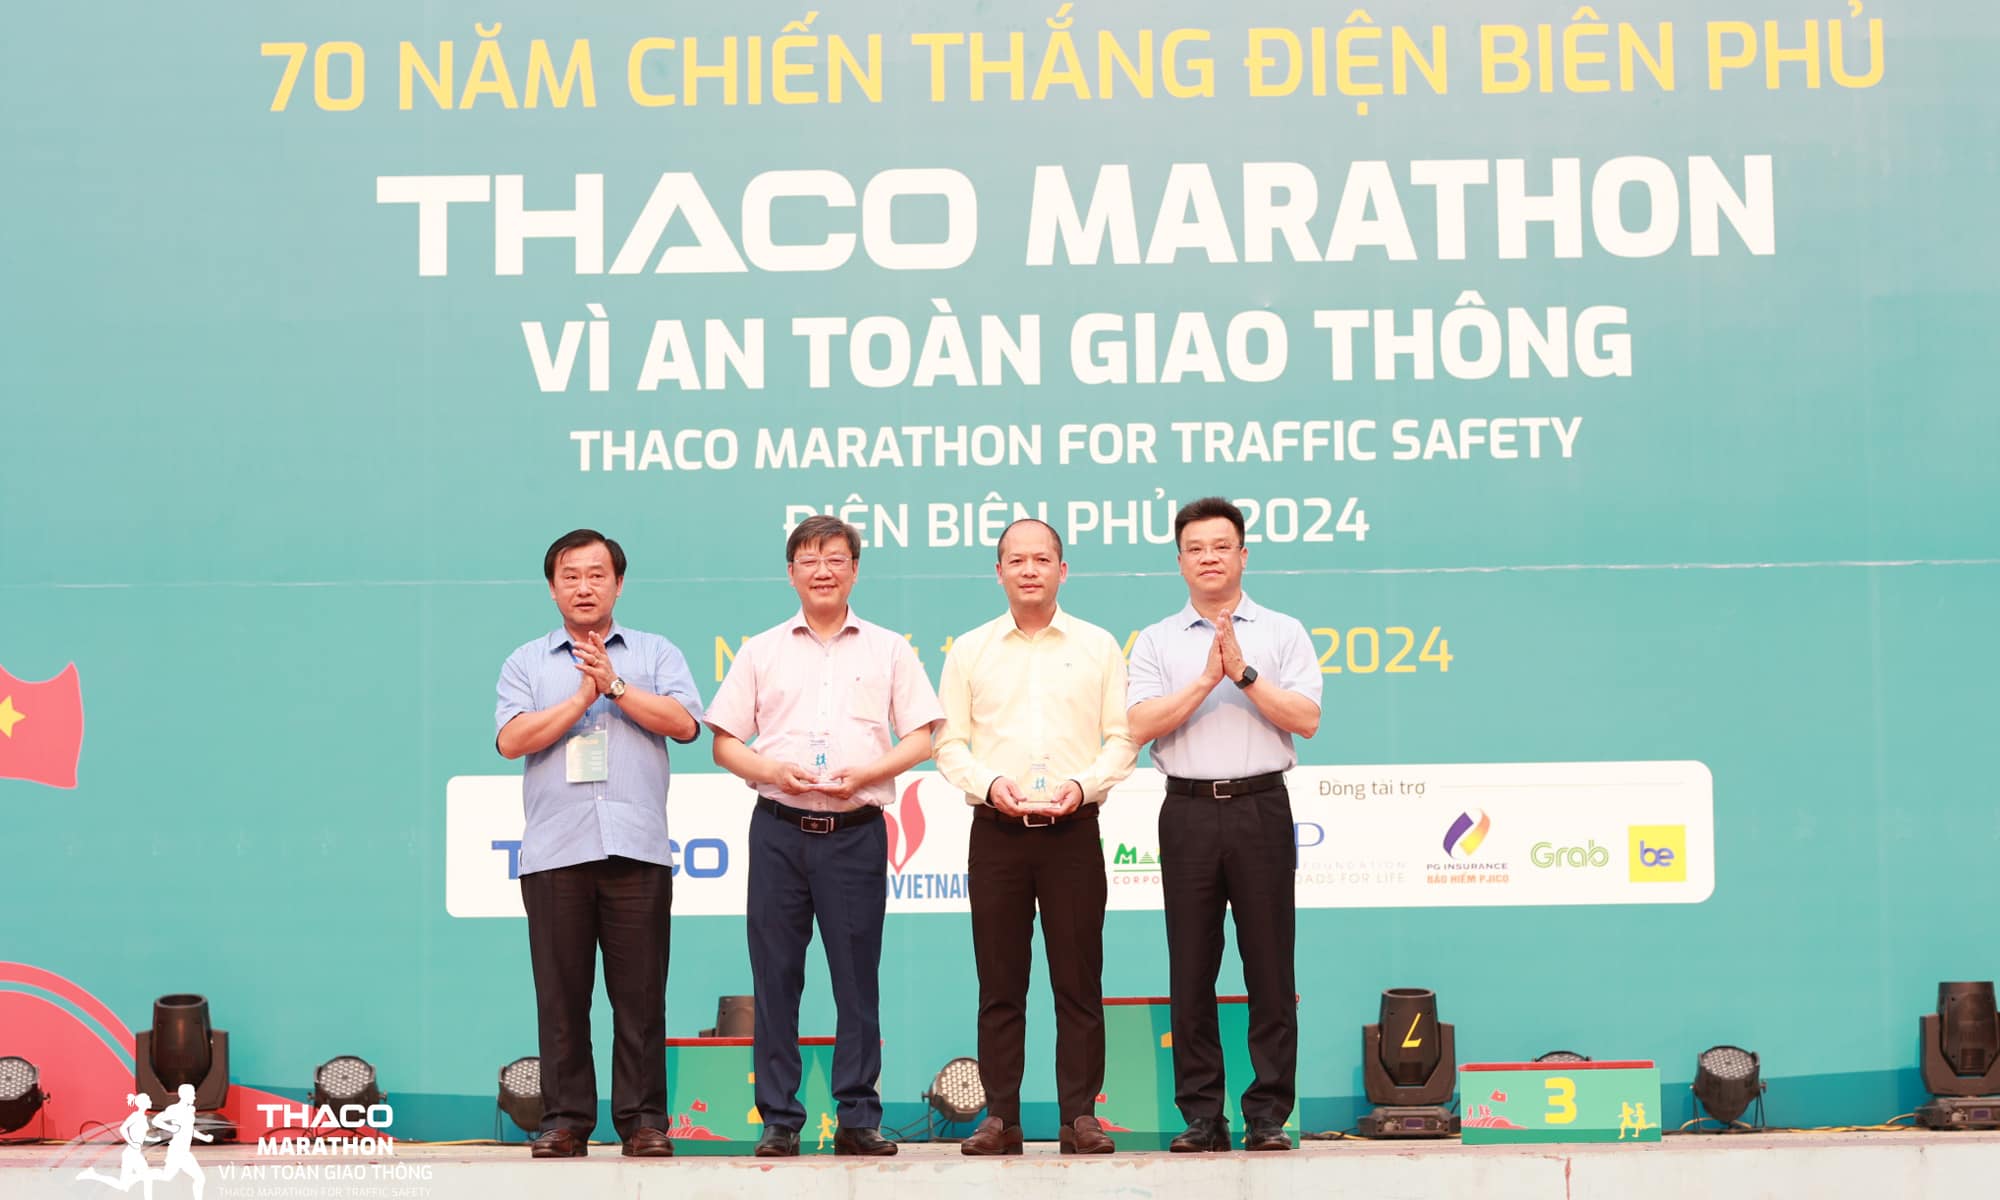 Đại diện THACO (đứng thứ 2, từ phải qua) nhận kỷ niệm chương từ Ban tổ chức